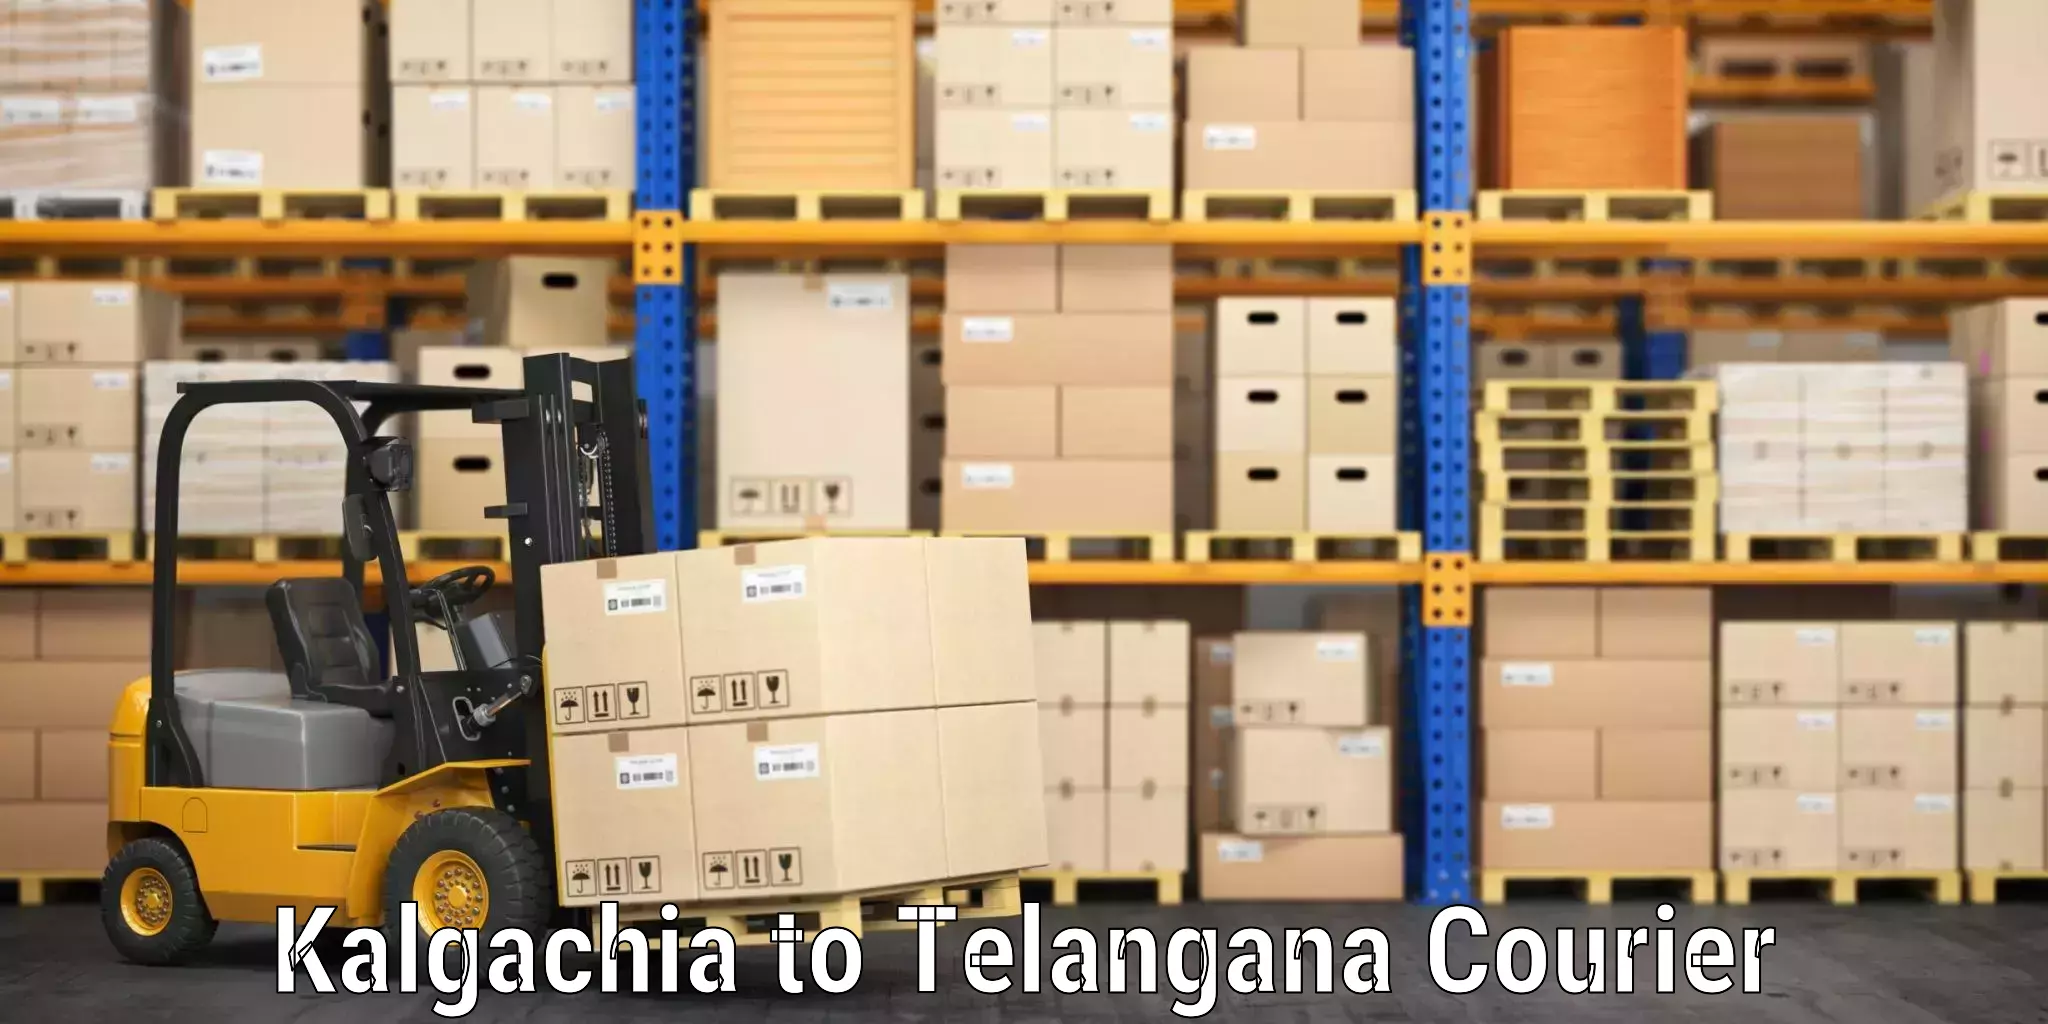 Efficient baggage transport Kalgachia to Telangana